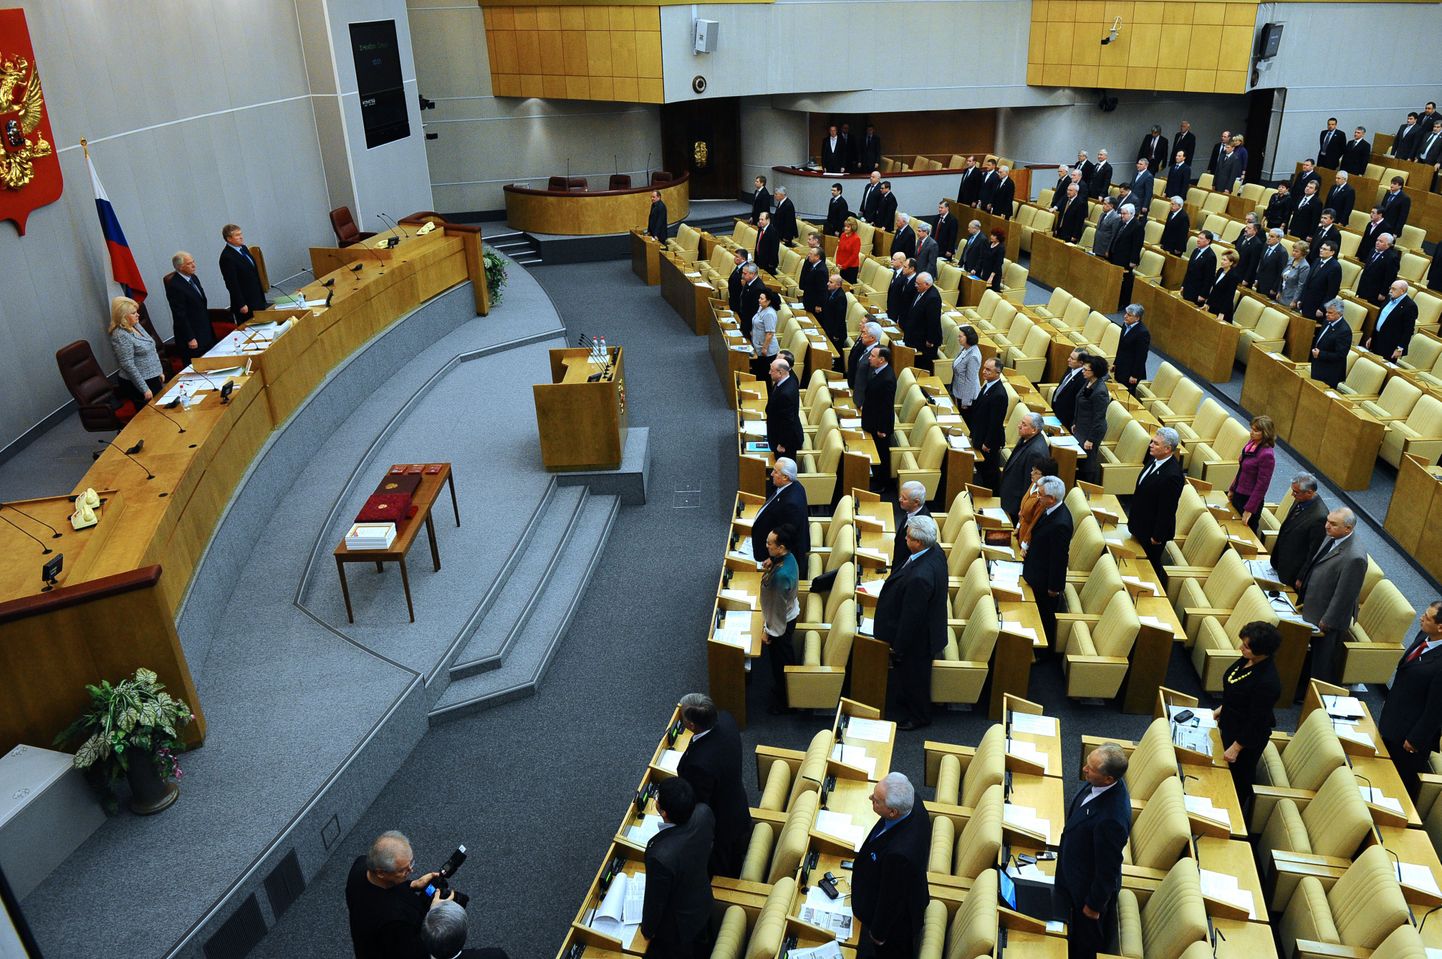 Vene riigiduuma istungitesaal